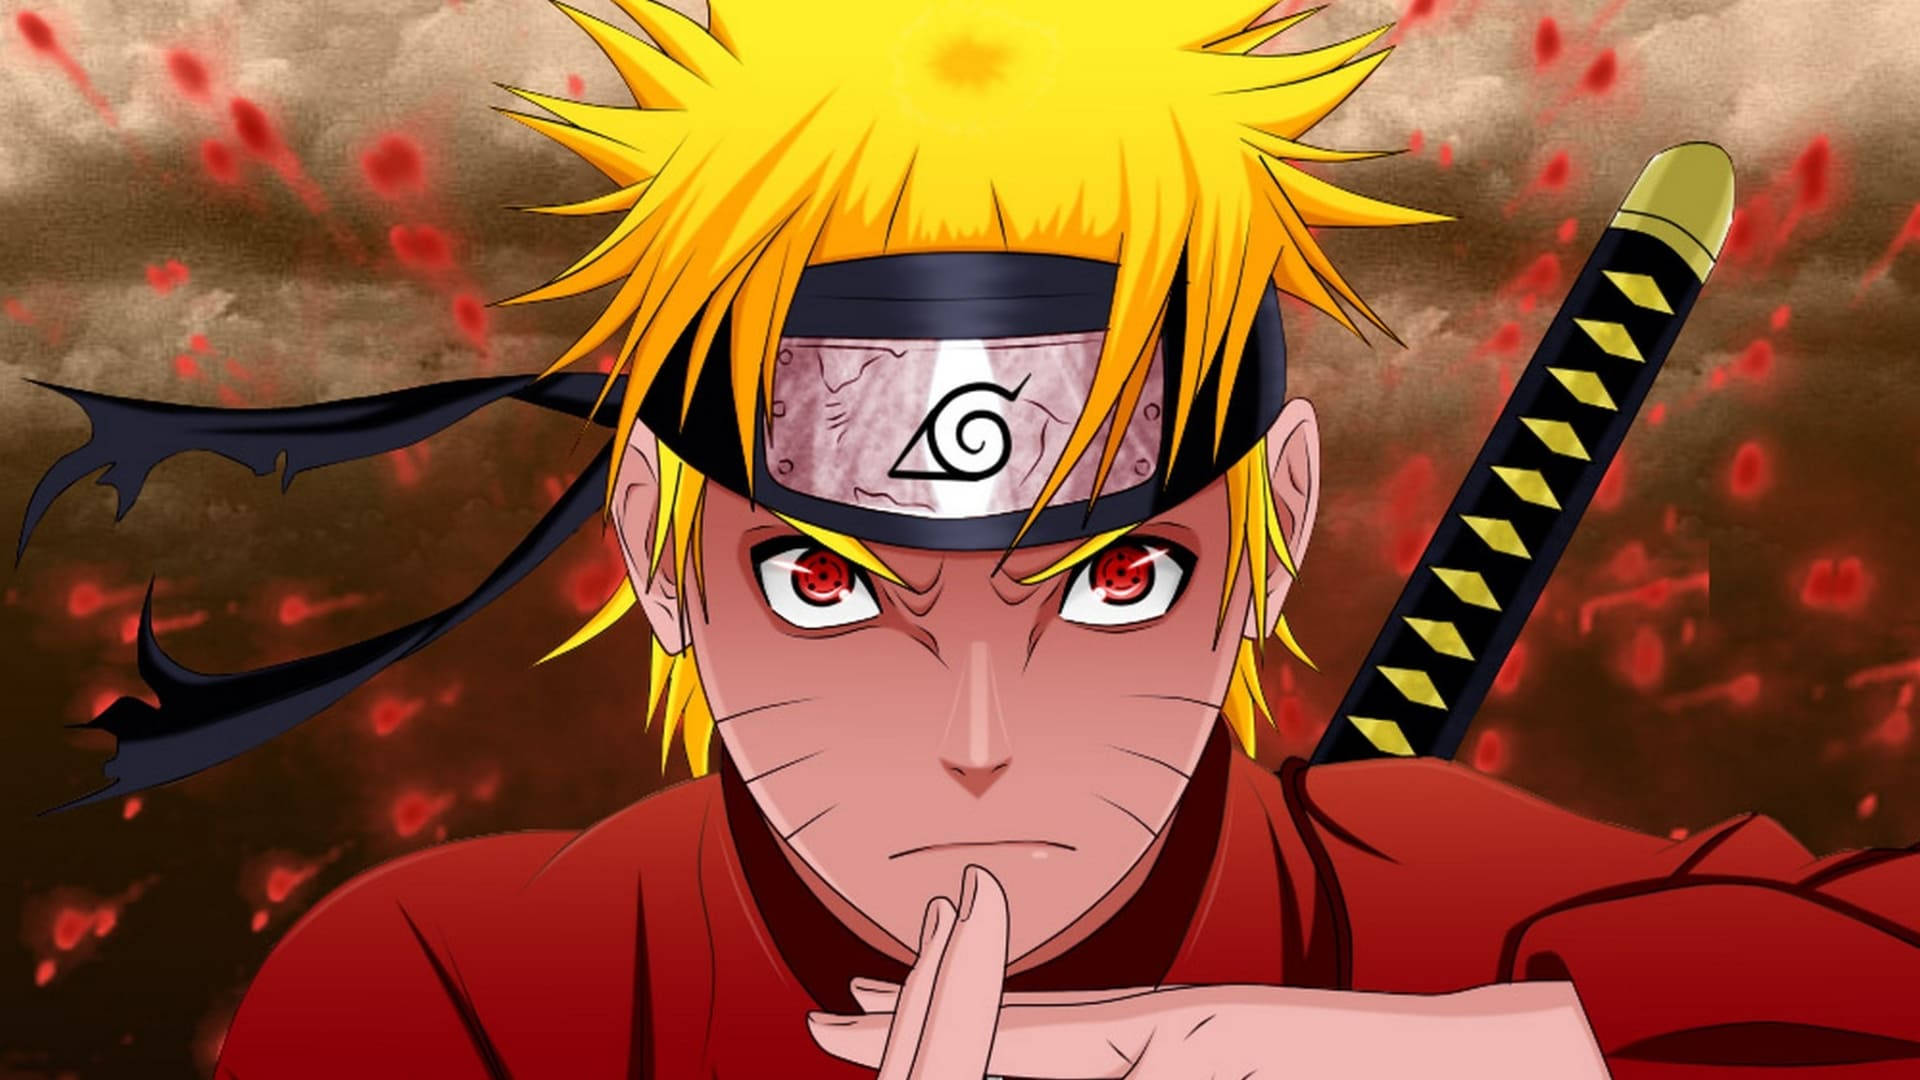 Sad Naruto Jutsu Hand Sign Background